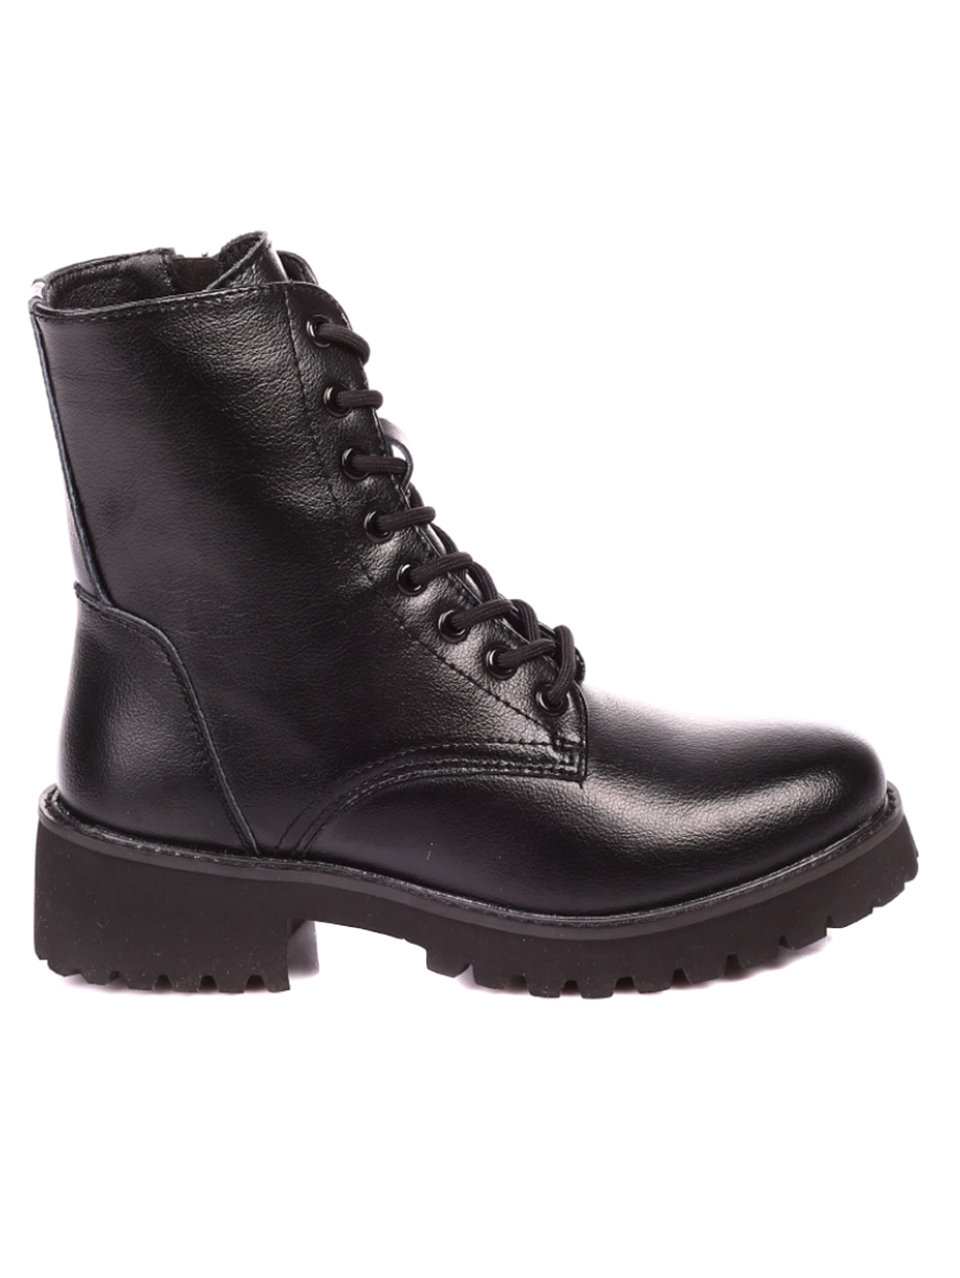 2AF-21596 black leather